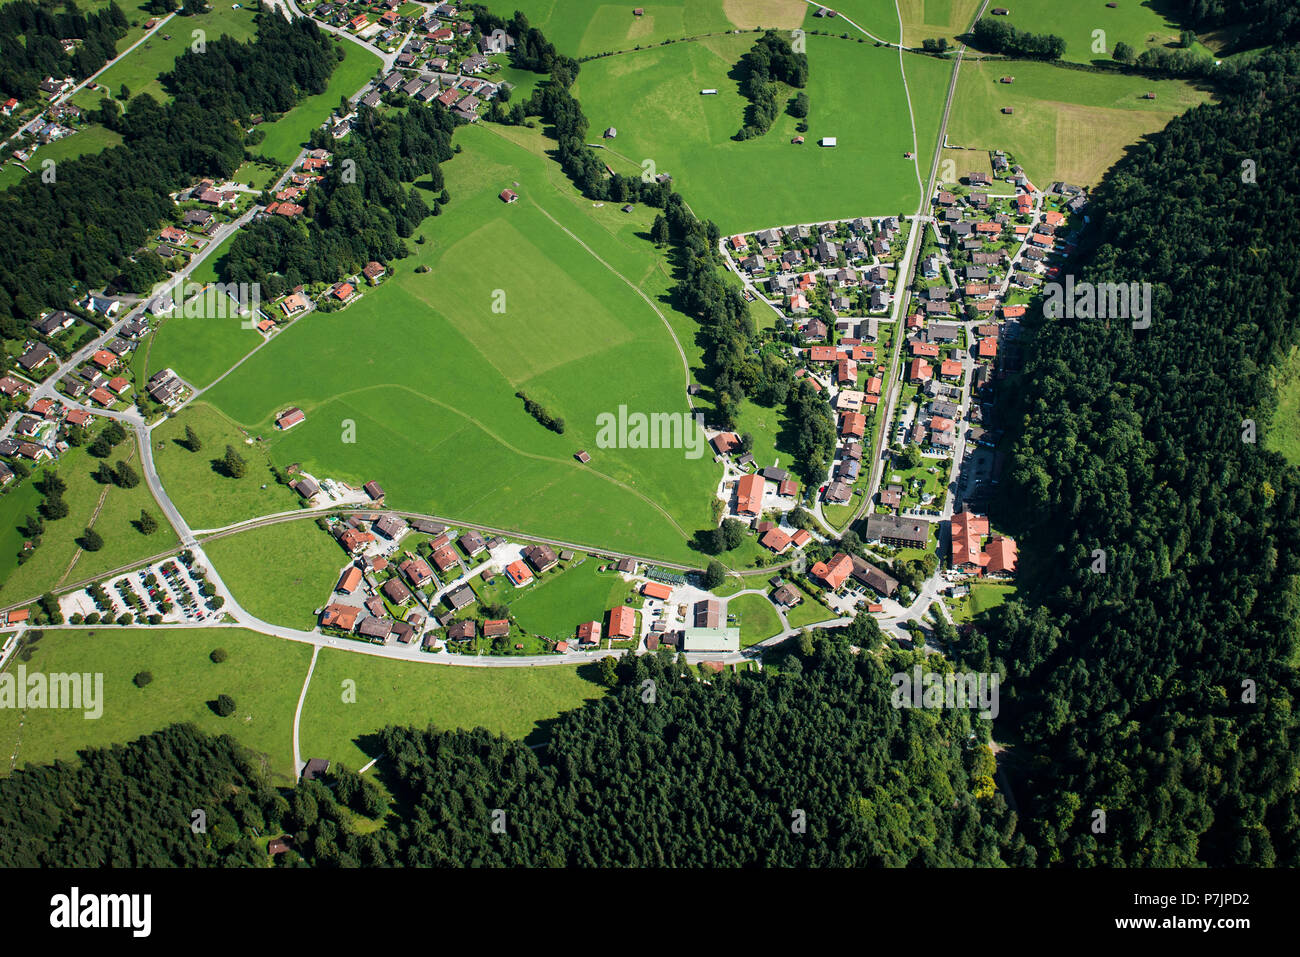 Grainau district Hammersbach near Garmisch-Partenkirchen, aerial view, Oberland, Bavaria, Germany Stock Photo